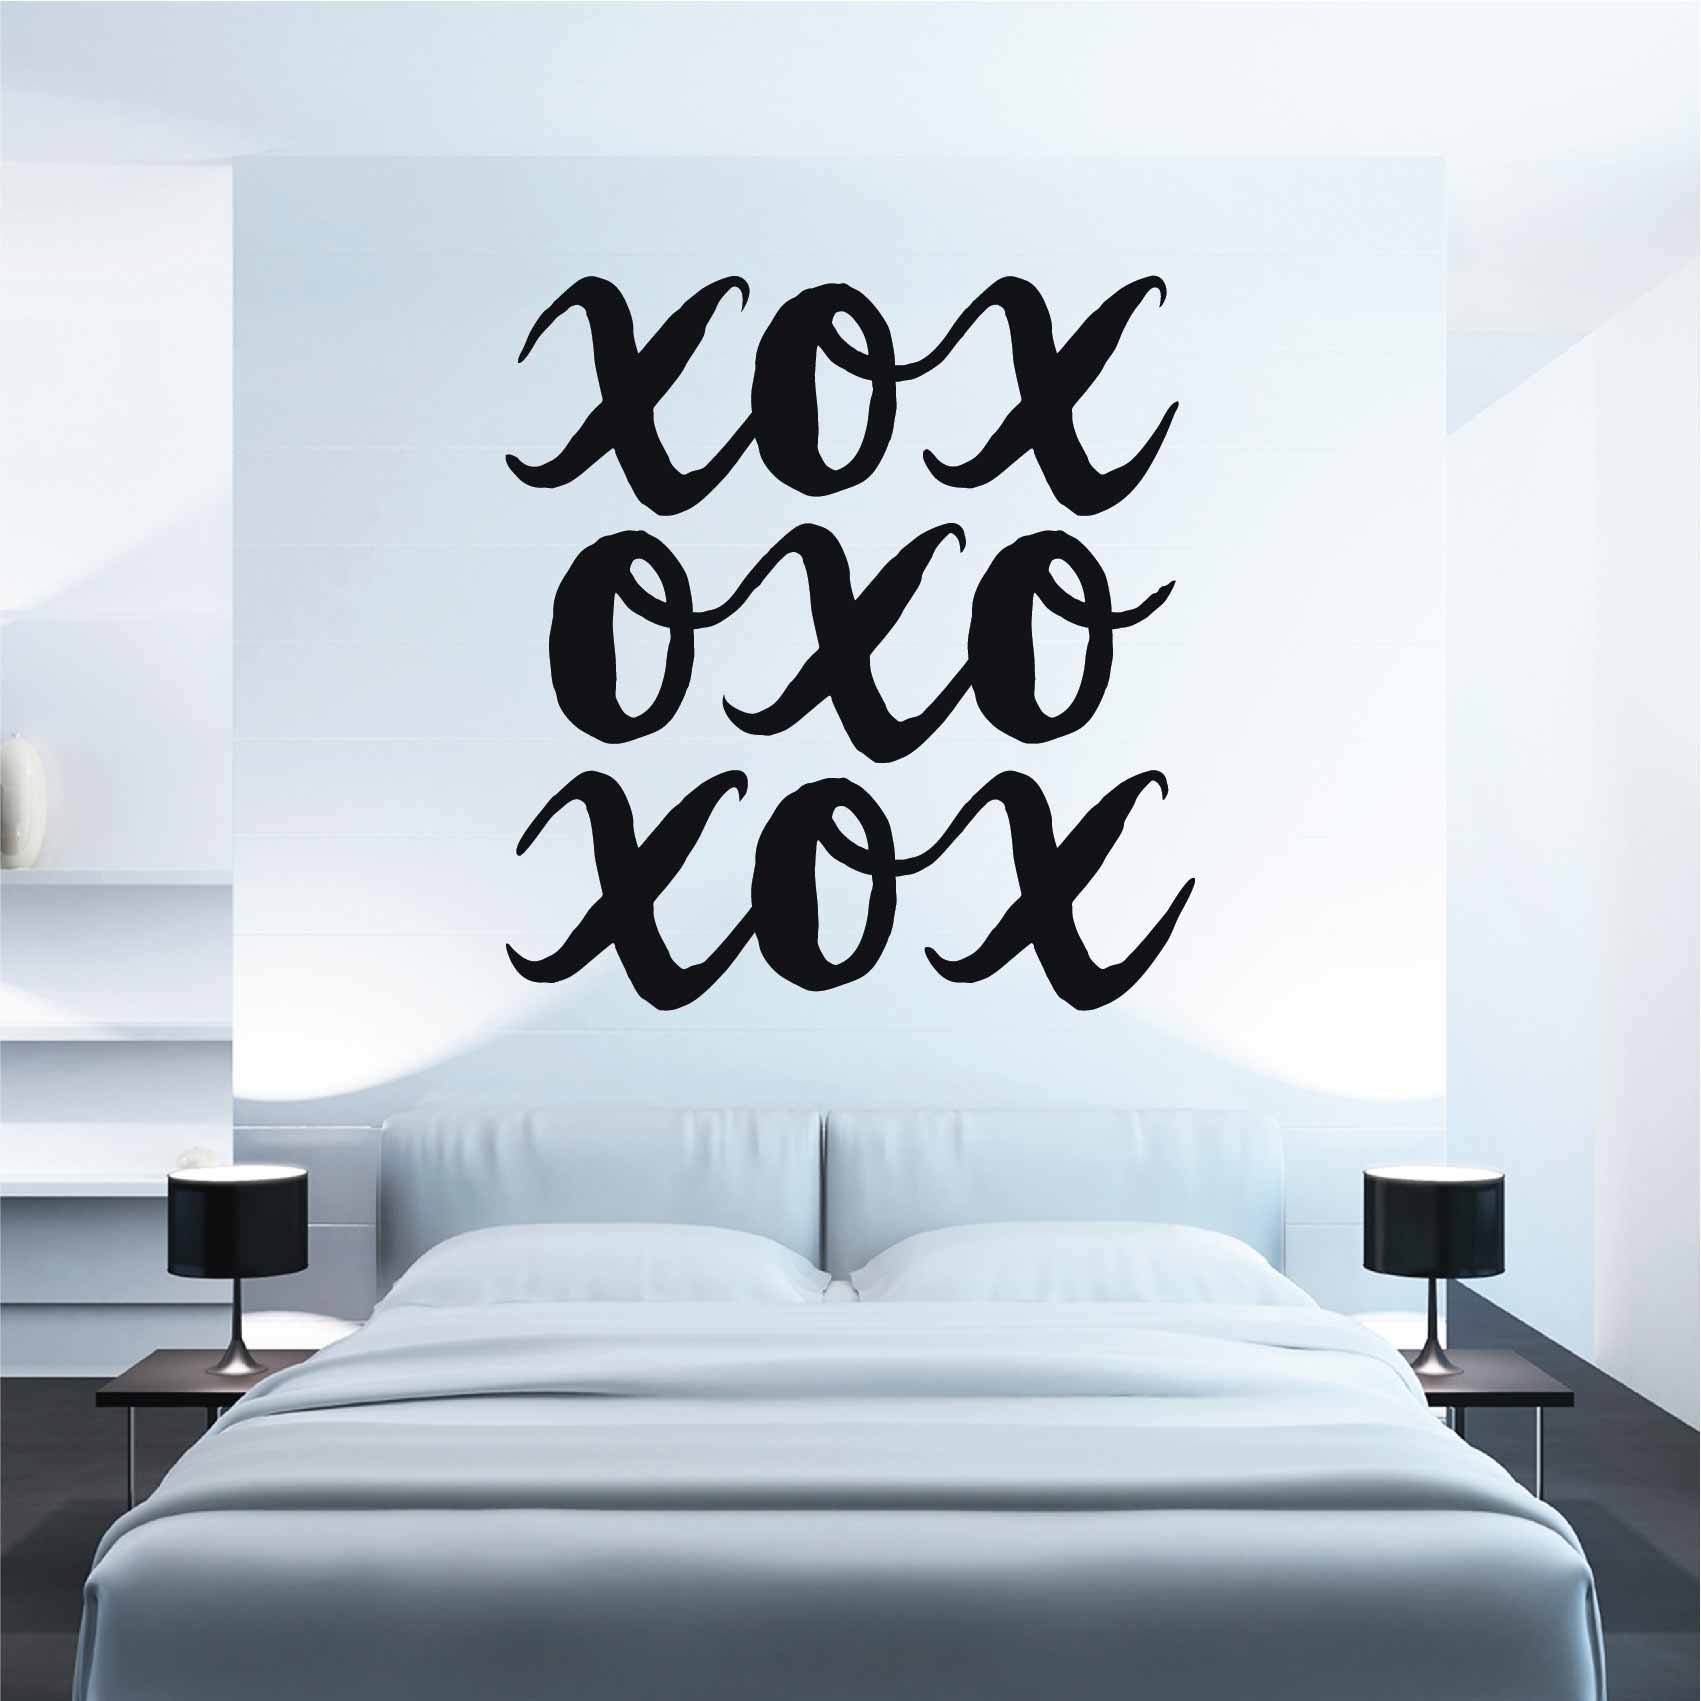 stickers-xoxo-ref10amour-stickers-muraux-amour-autocollant-deco-chambre-salon-cuisine-sticker-mural-love